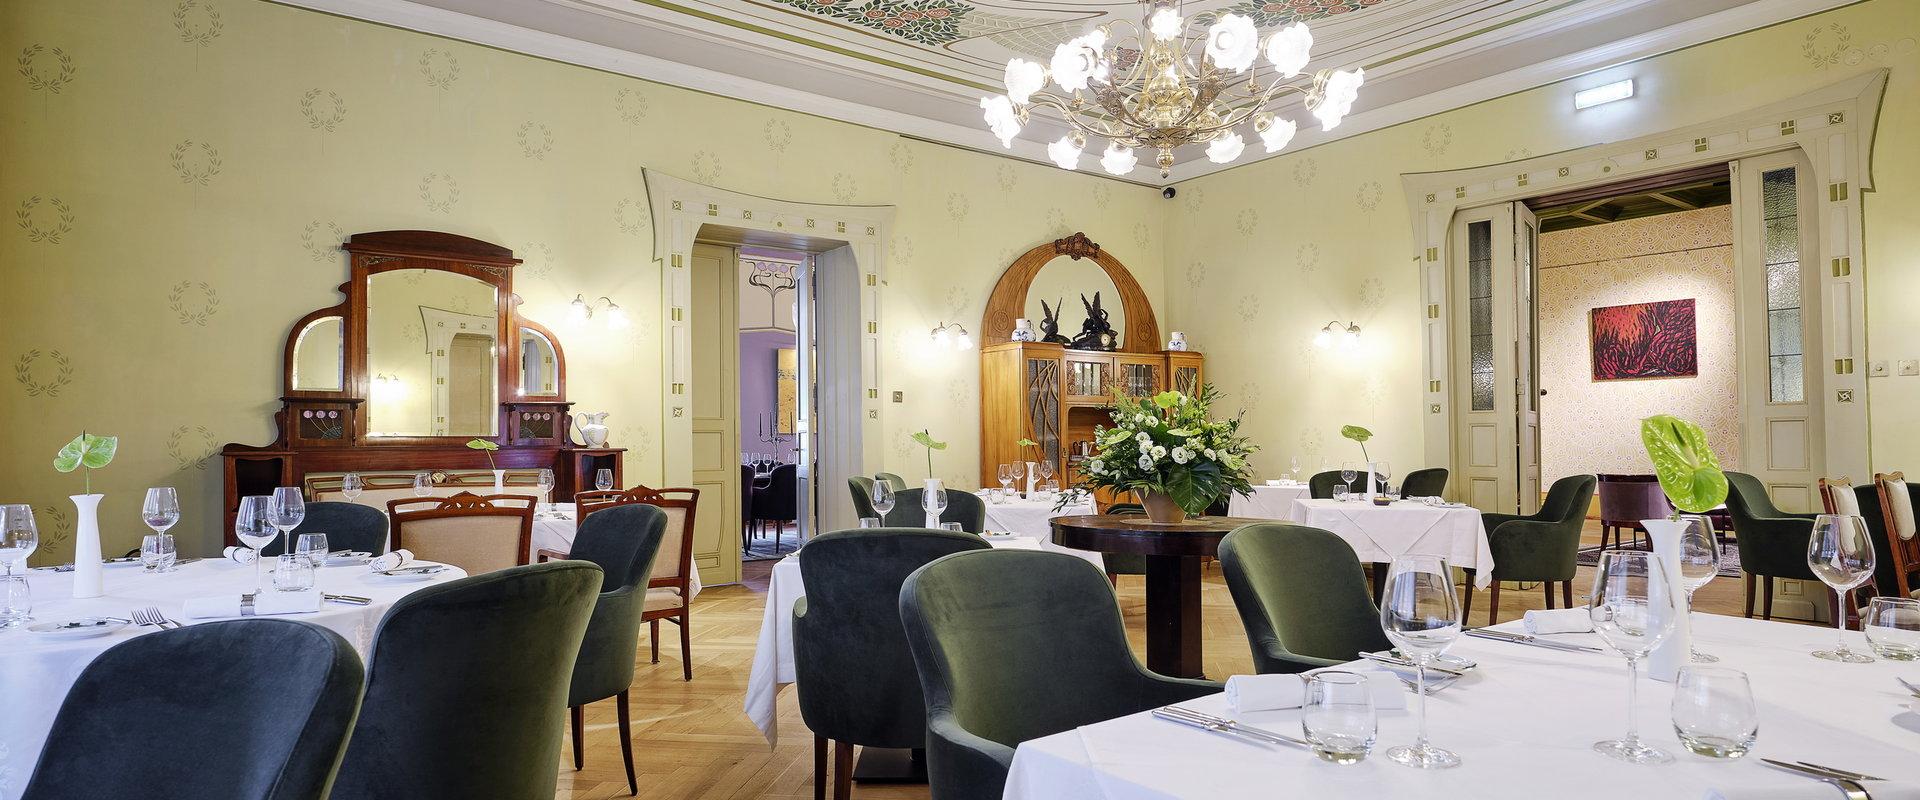 Villa Ammende Restoran - restoranisaal